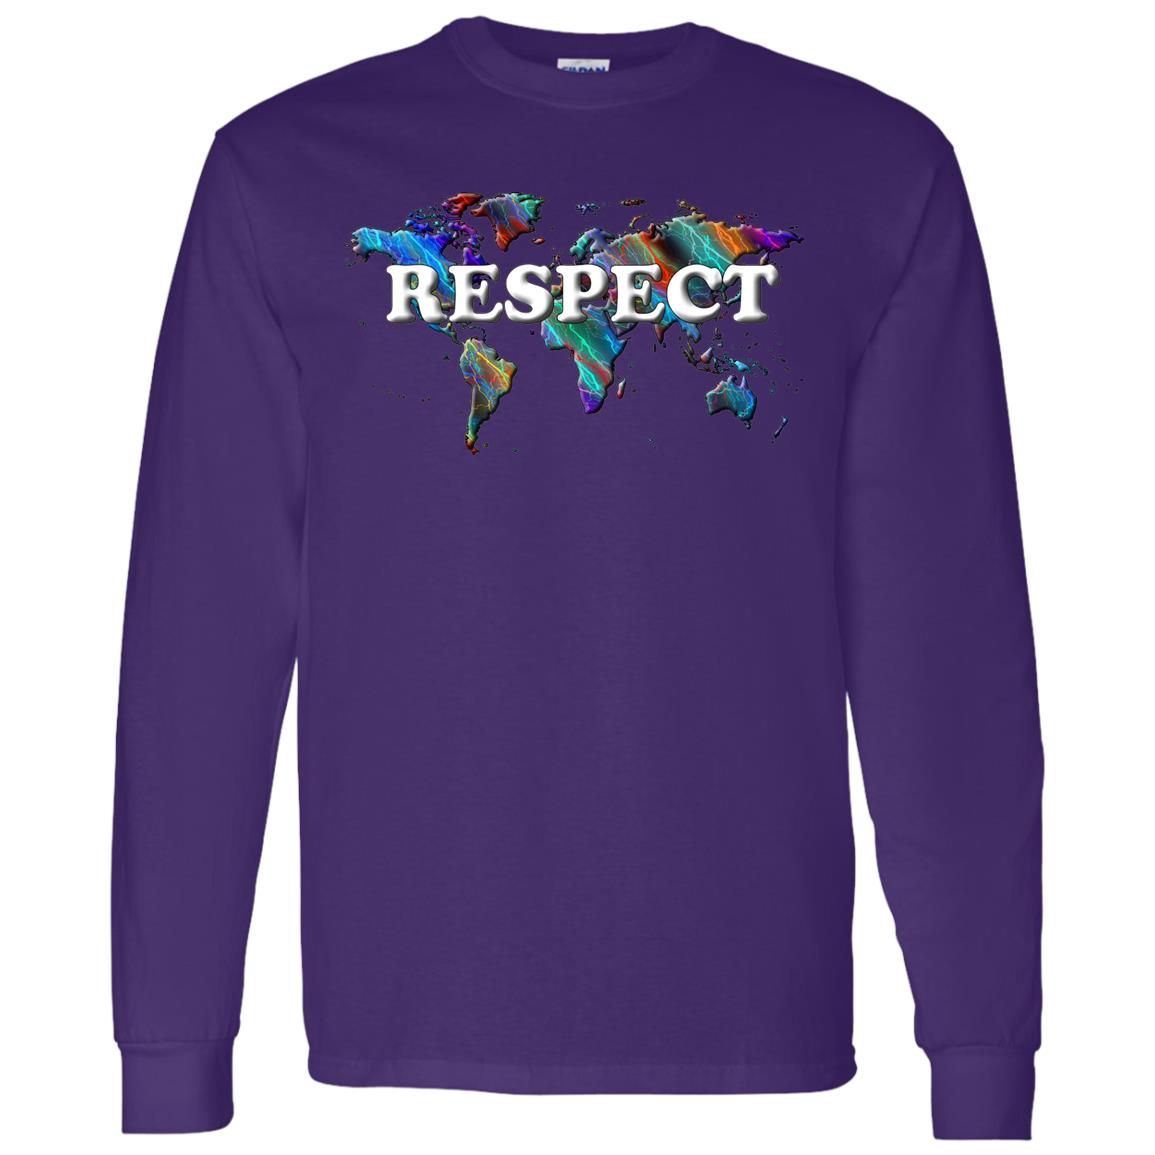 Respect Long Sleeve T-Shirt